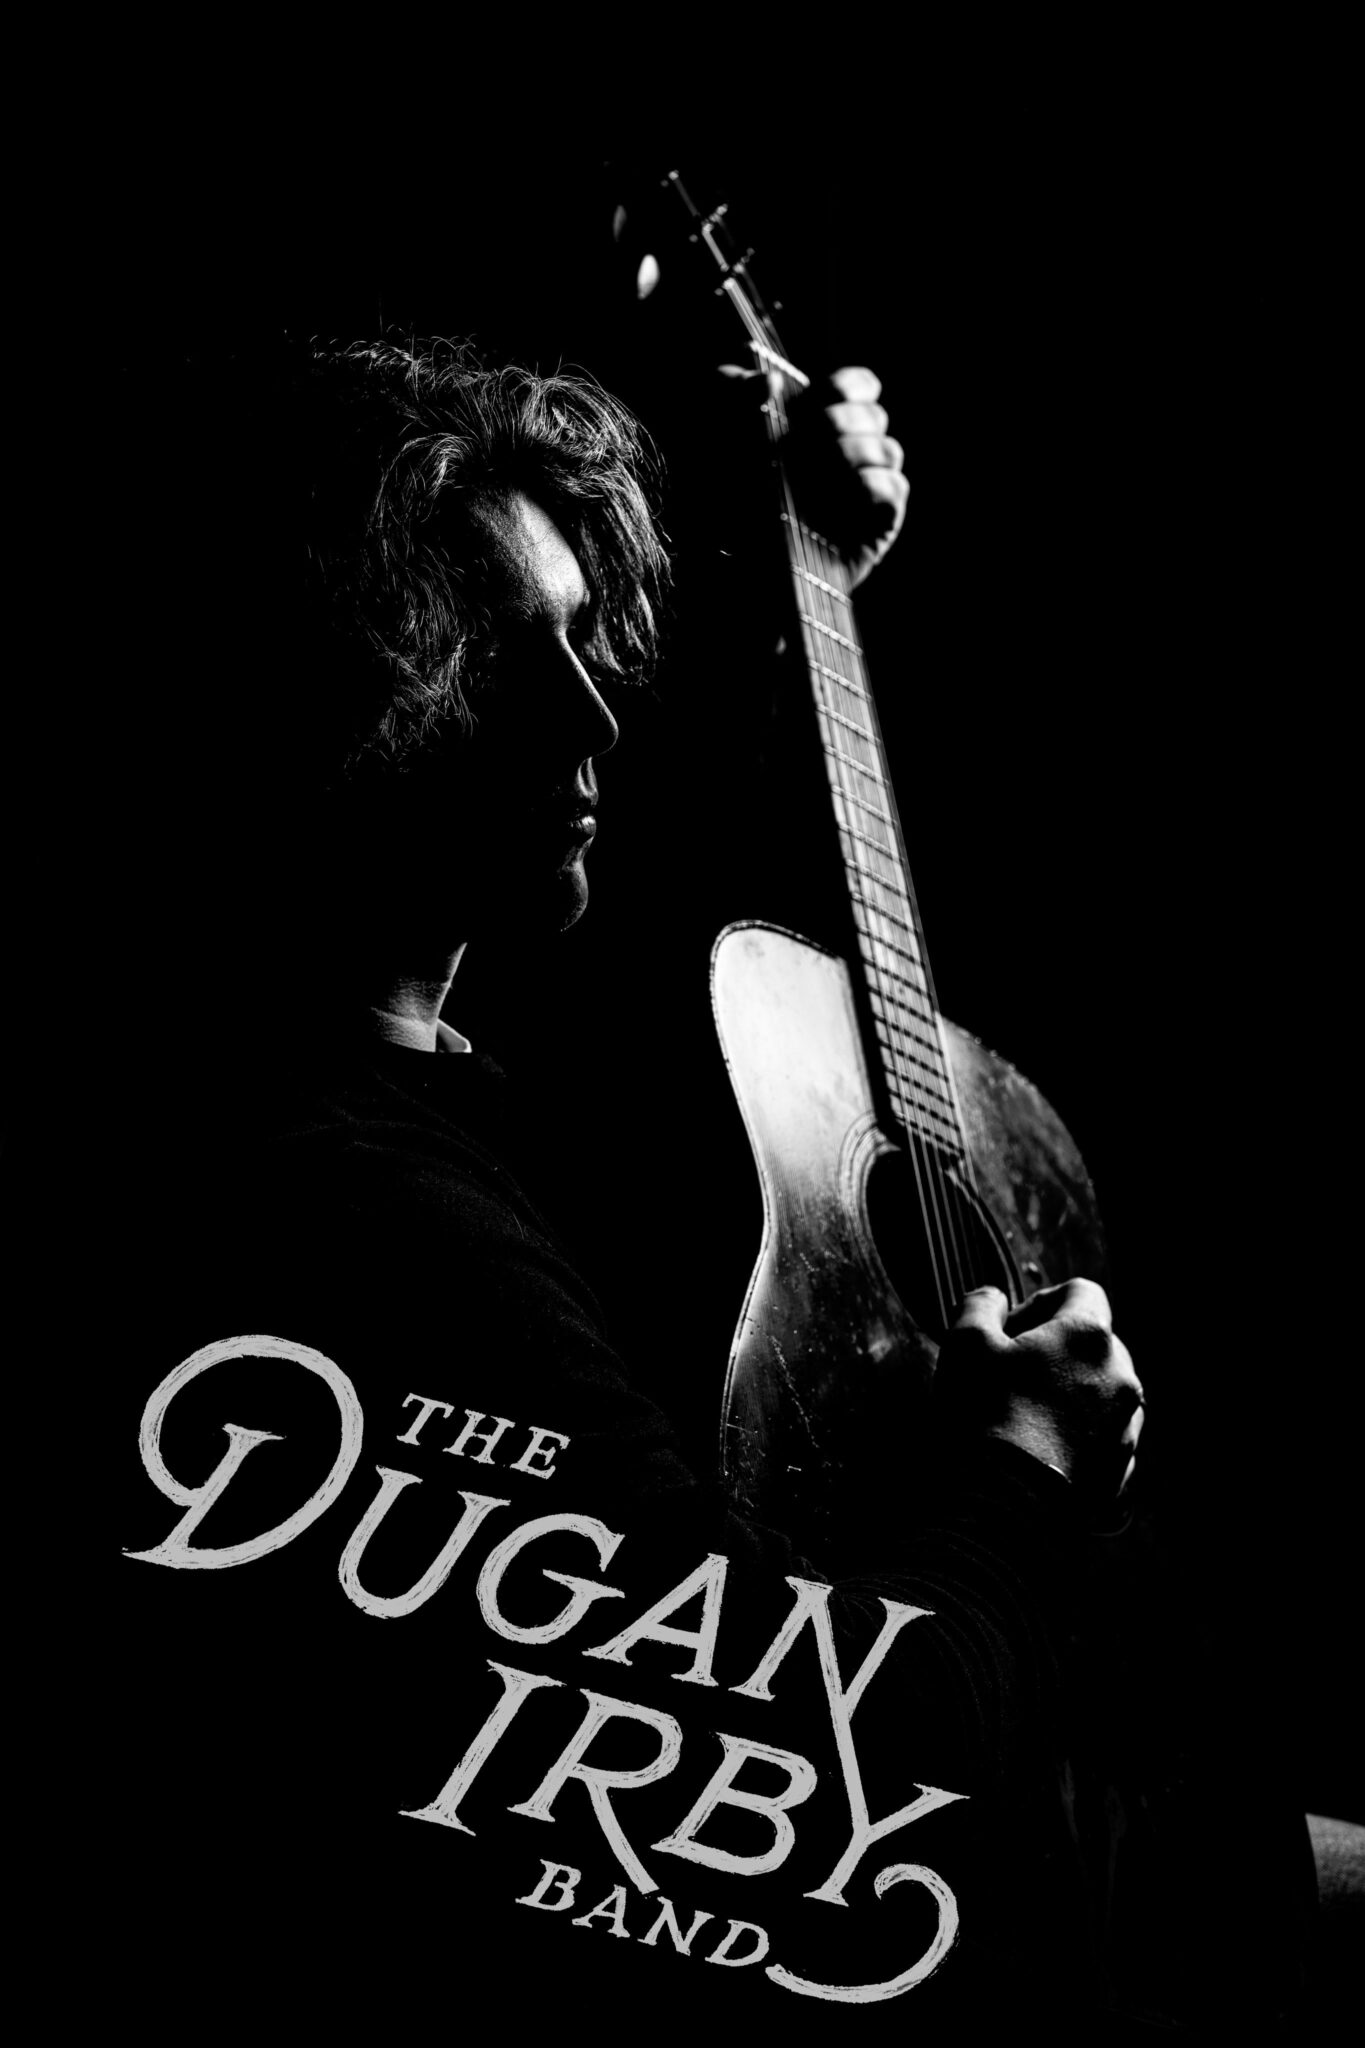 Dugan solo poster